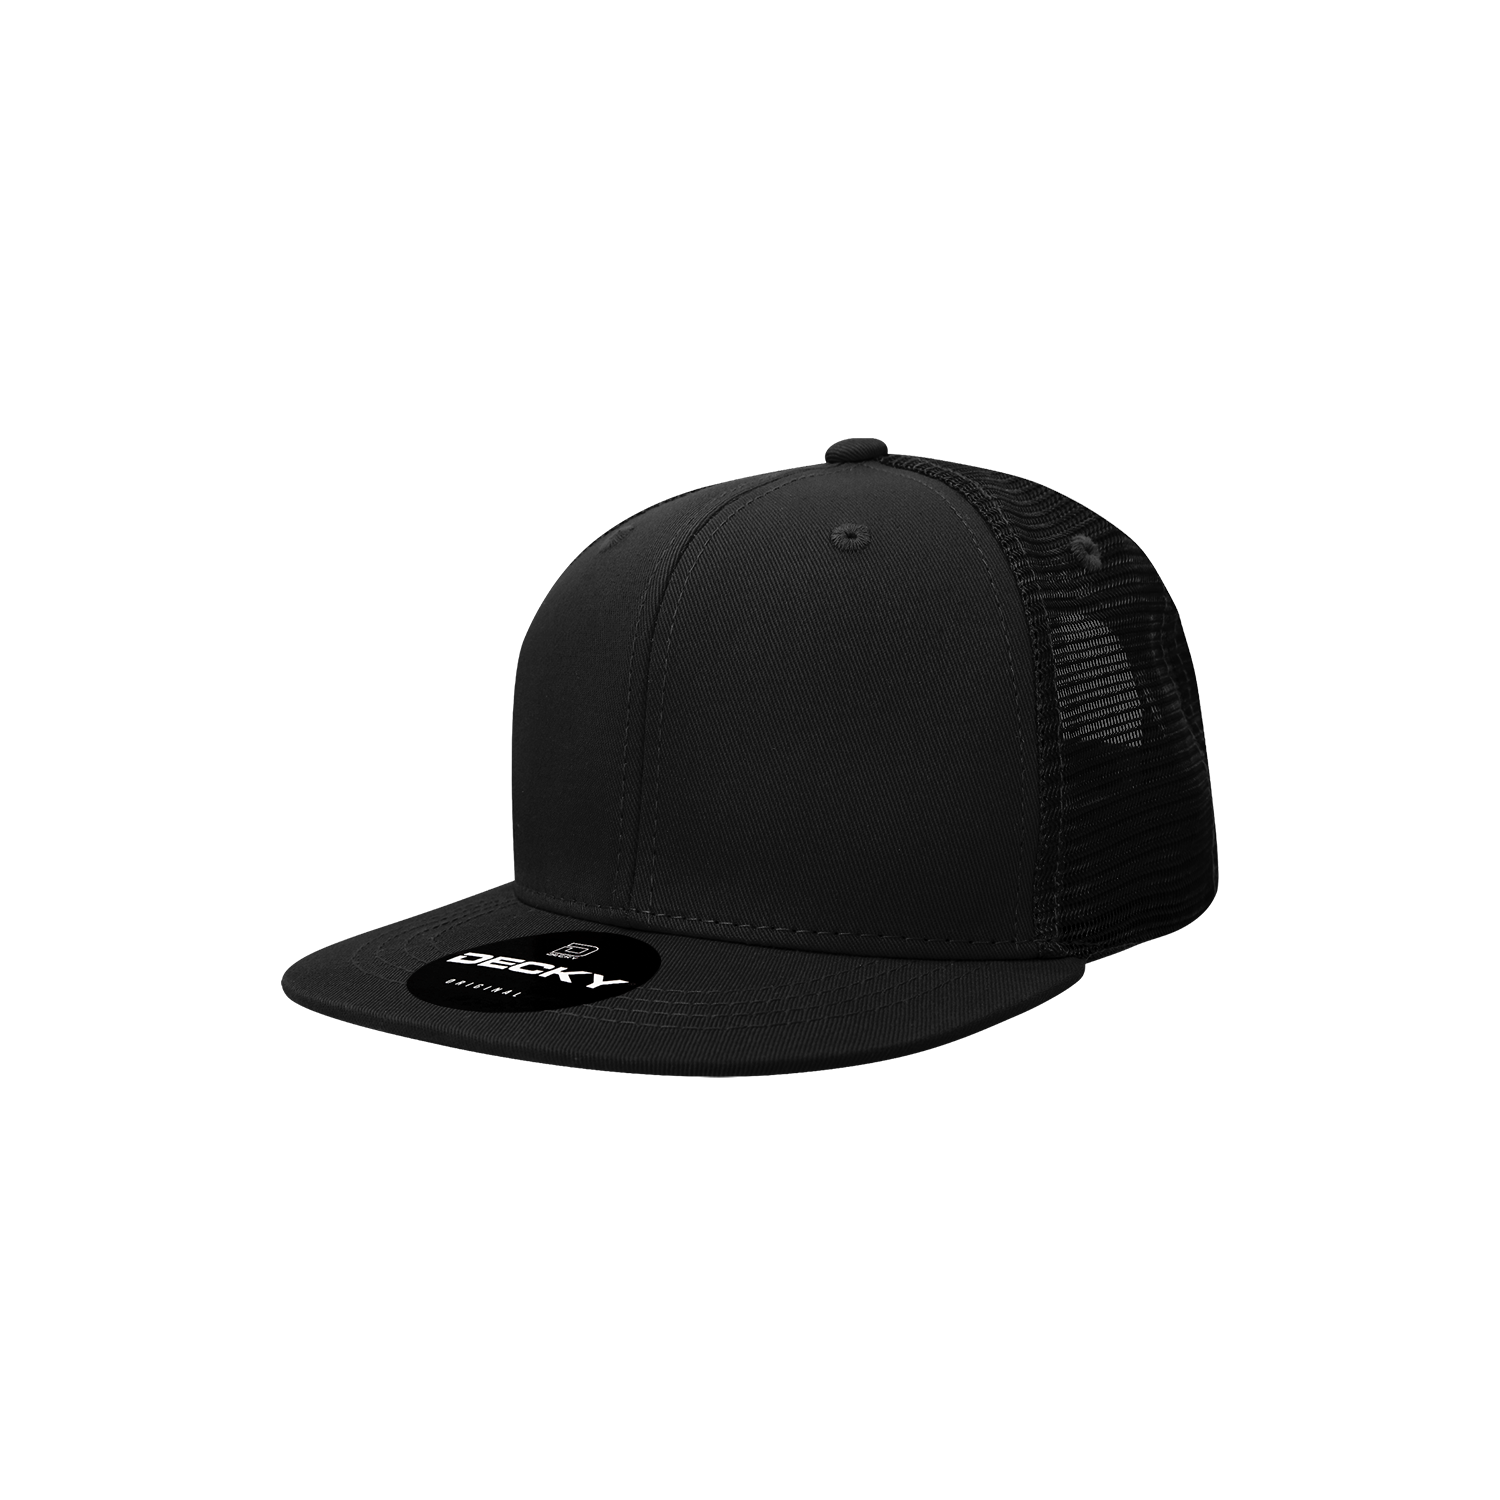 Decky 5010 - Kids Youth Trucker Hat, Flat Bill Snapback Cap, Black